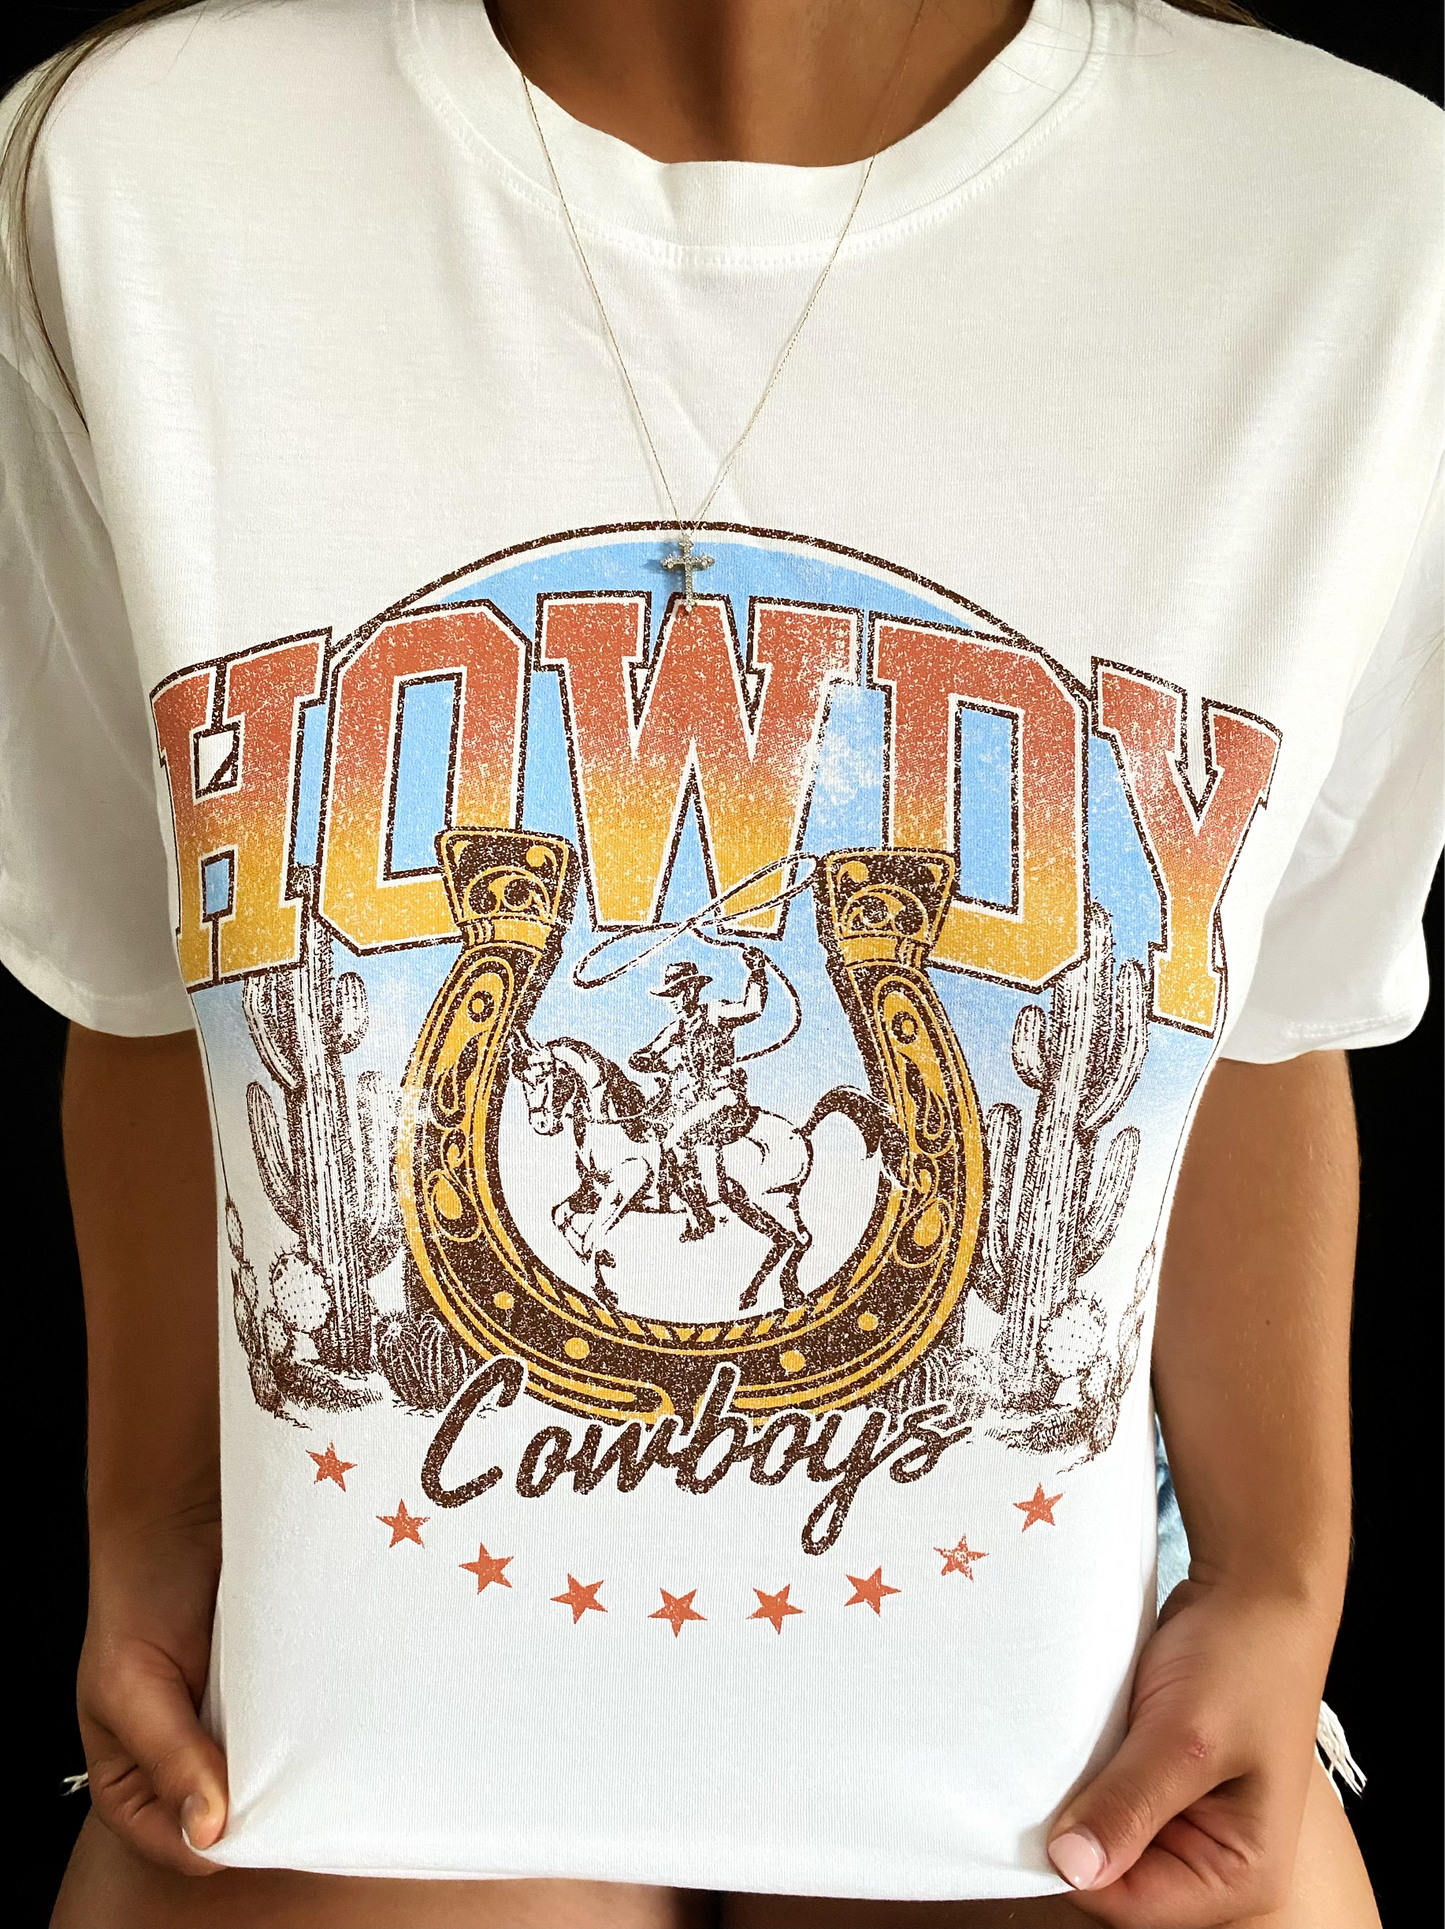 Howdy Cowboys Top